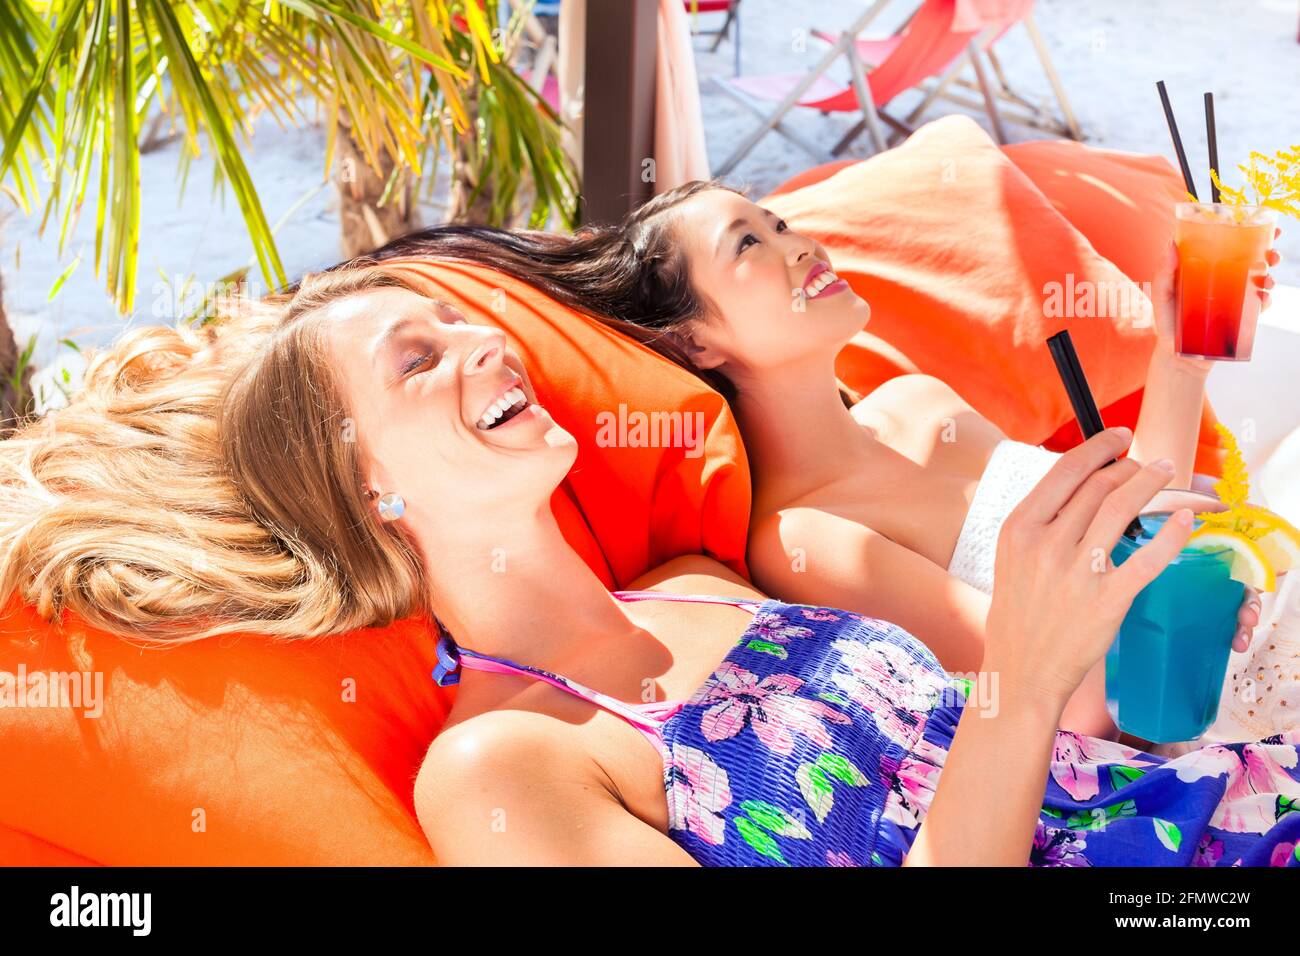 Urlaubskonzept, zwei junge Frauen am Strand Stockfoto